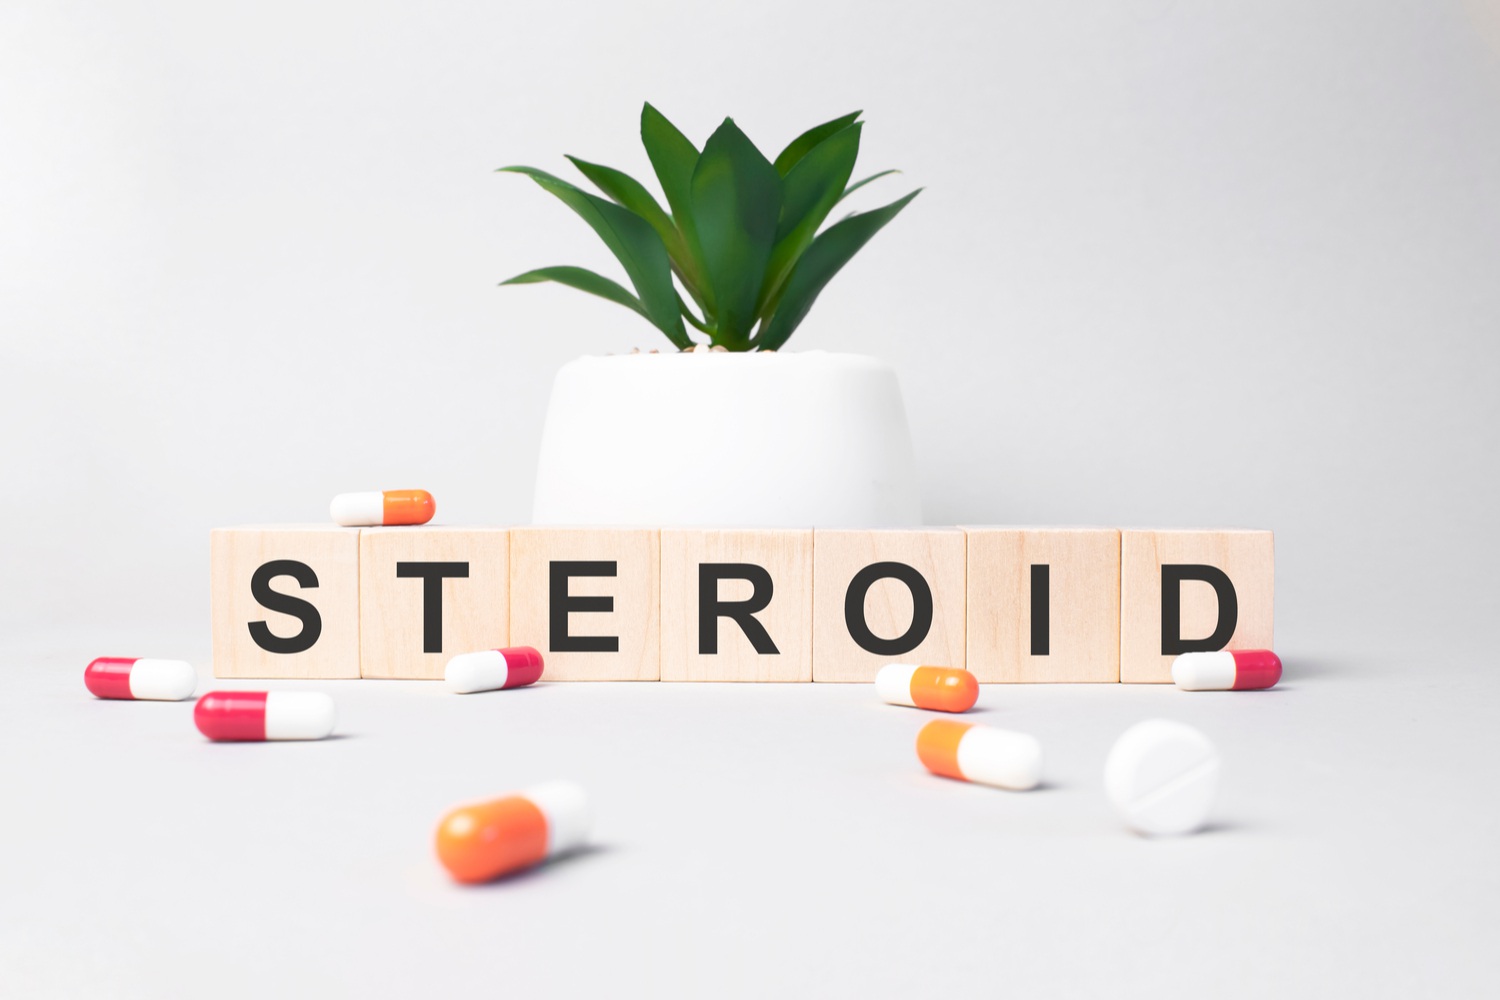 Steroids in children